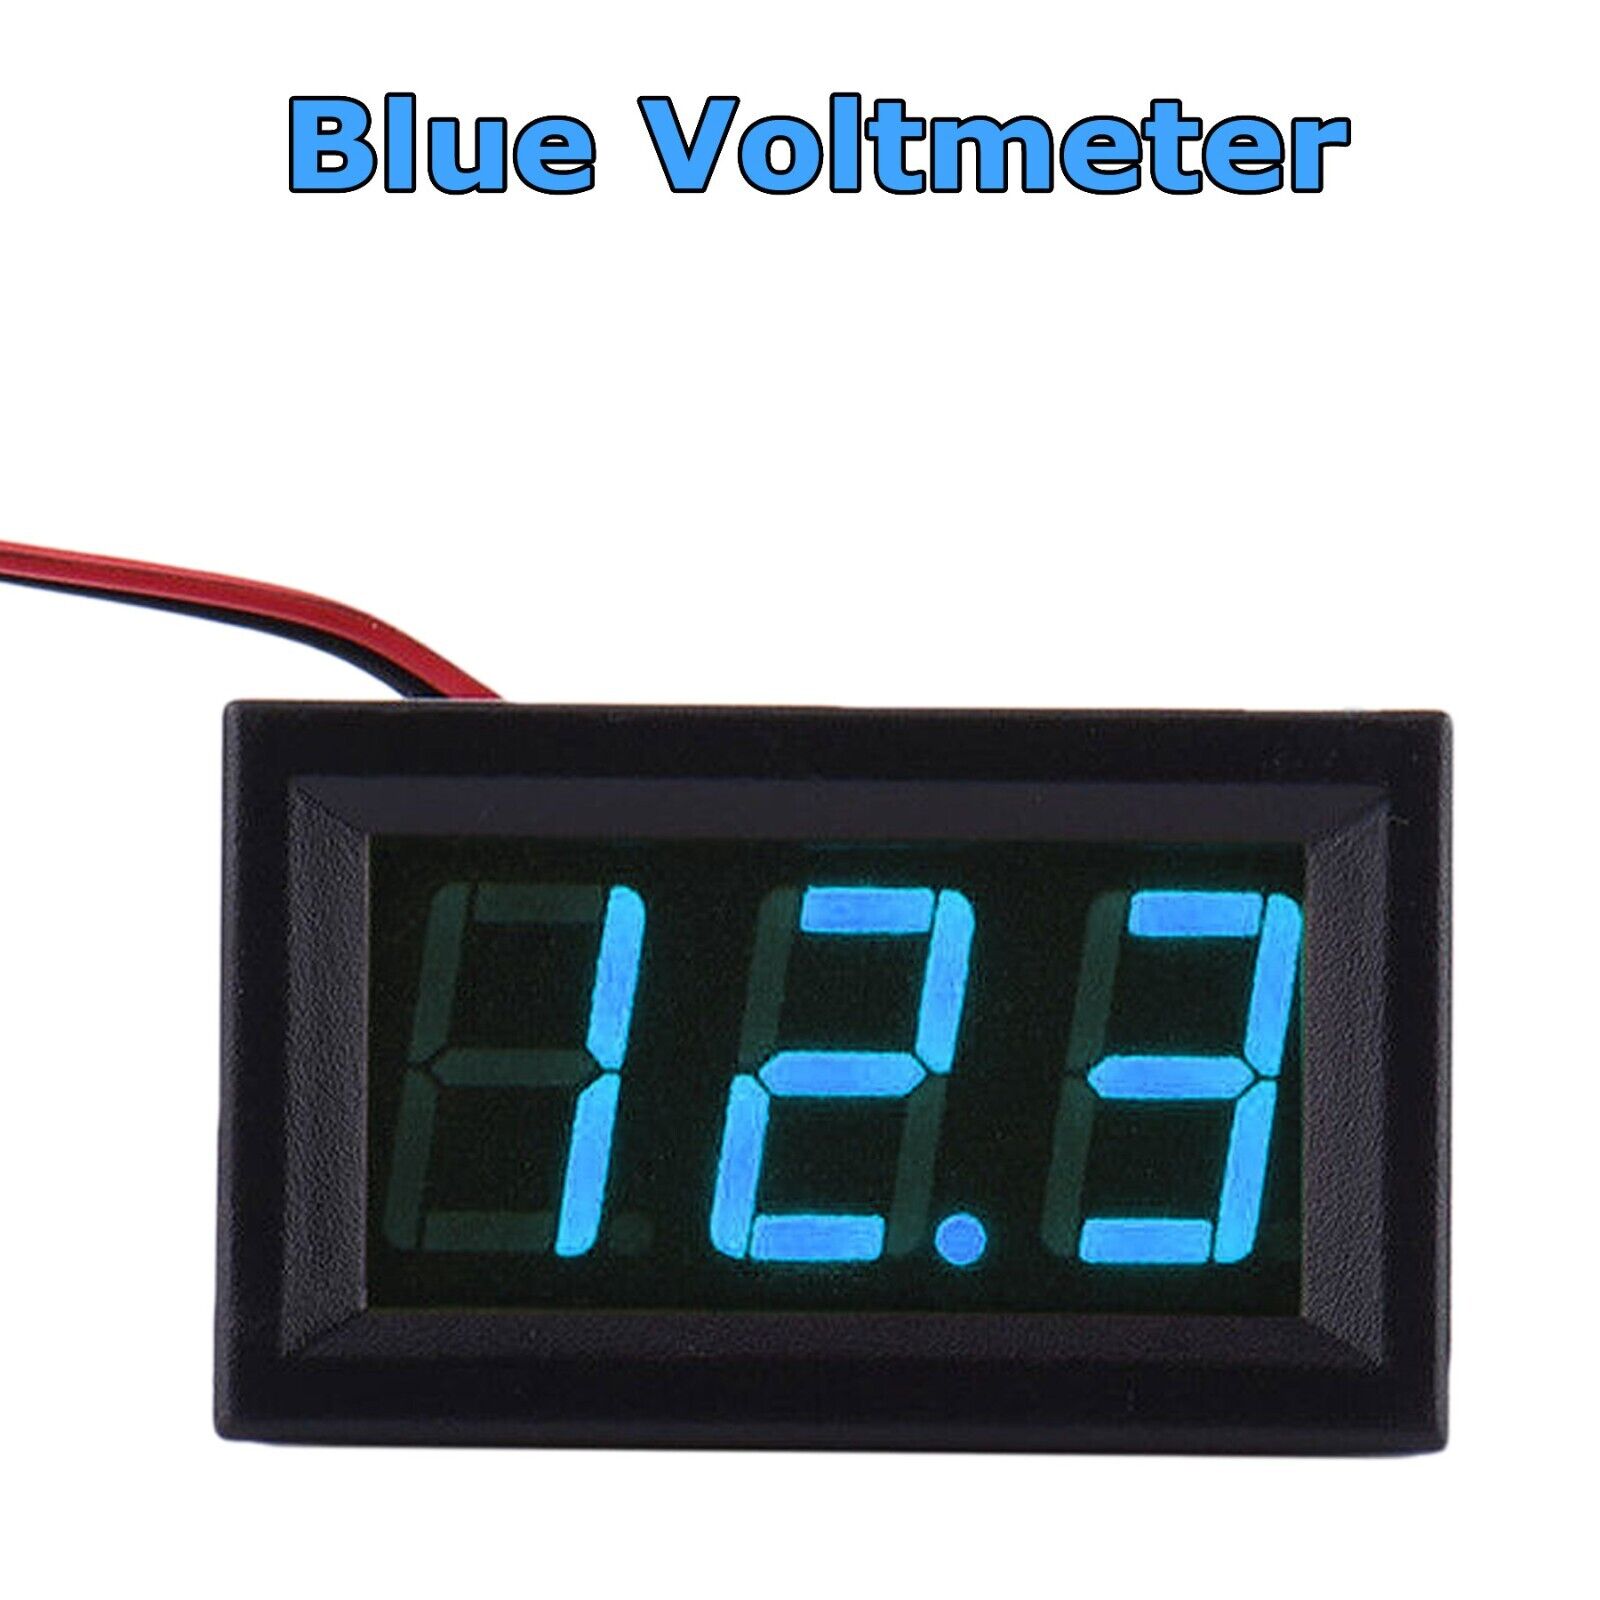 LED 12V ~ 24V Digital Display Voltmeter Car Motorcycle Voltage Gauge Panel Meter